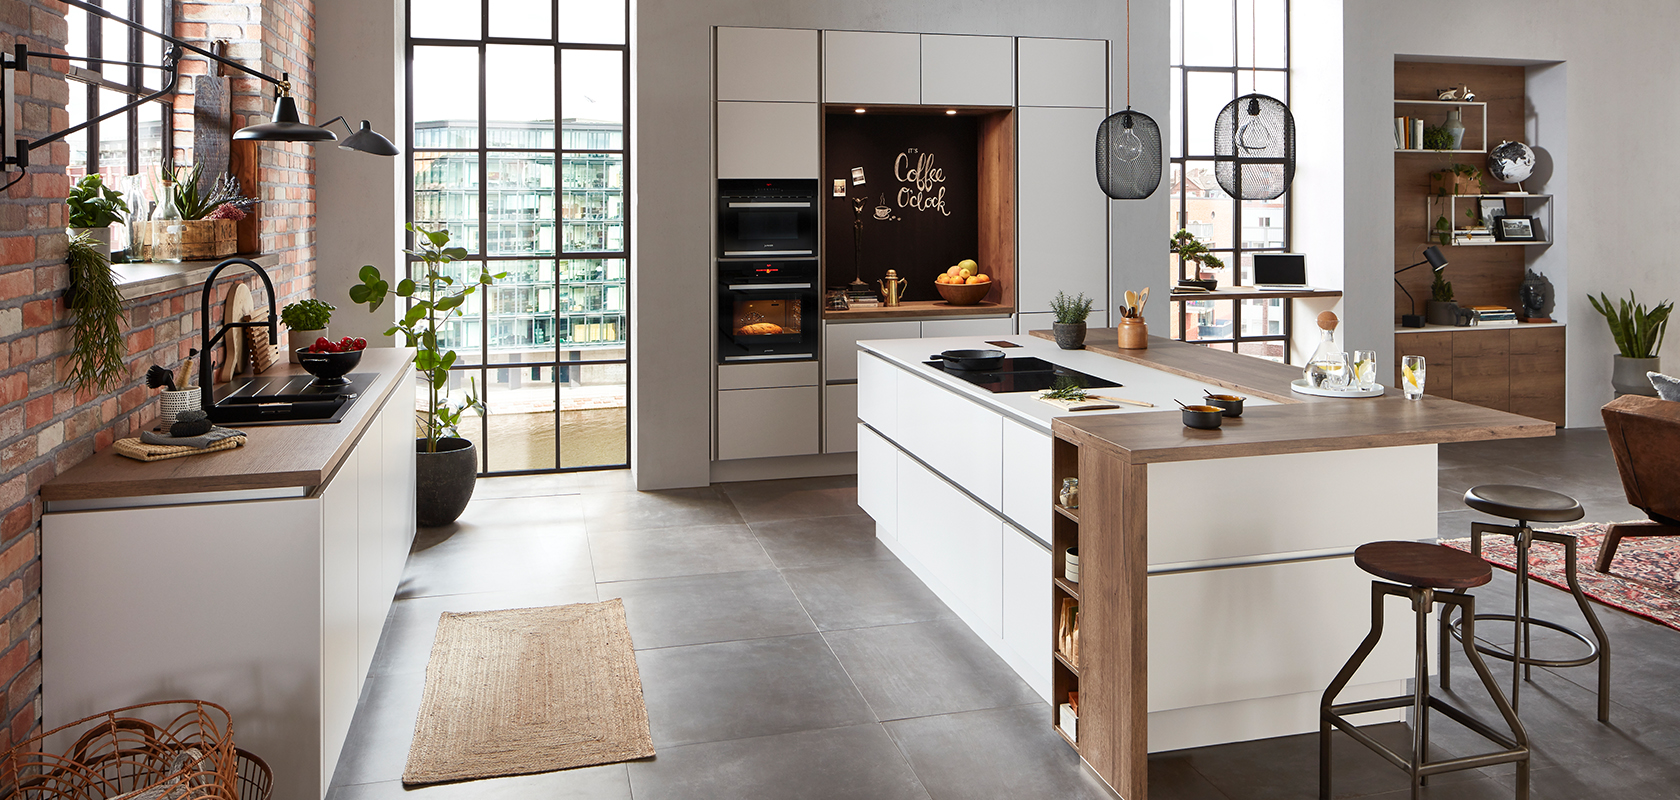 Nowoczesna kuchnia z ceglanymi ścianami, białymi szafkami, wyspą kuchenną, stalowymi urządzeniami AGD i naturalnym światłem, tworząca przytulną, stylową przestrzeń.